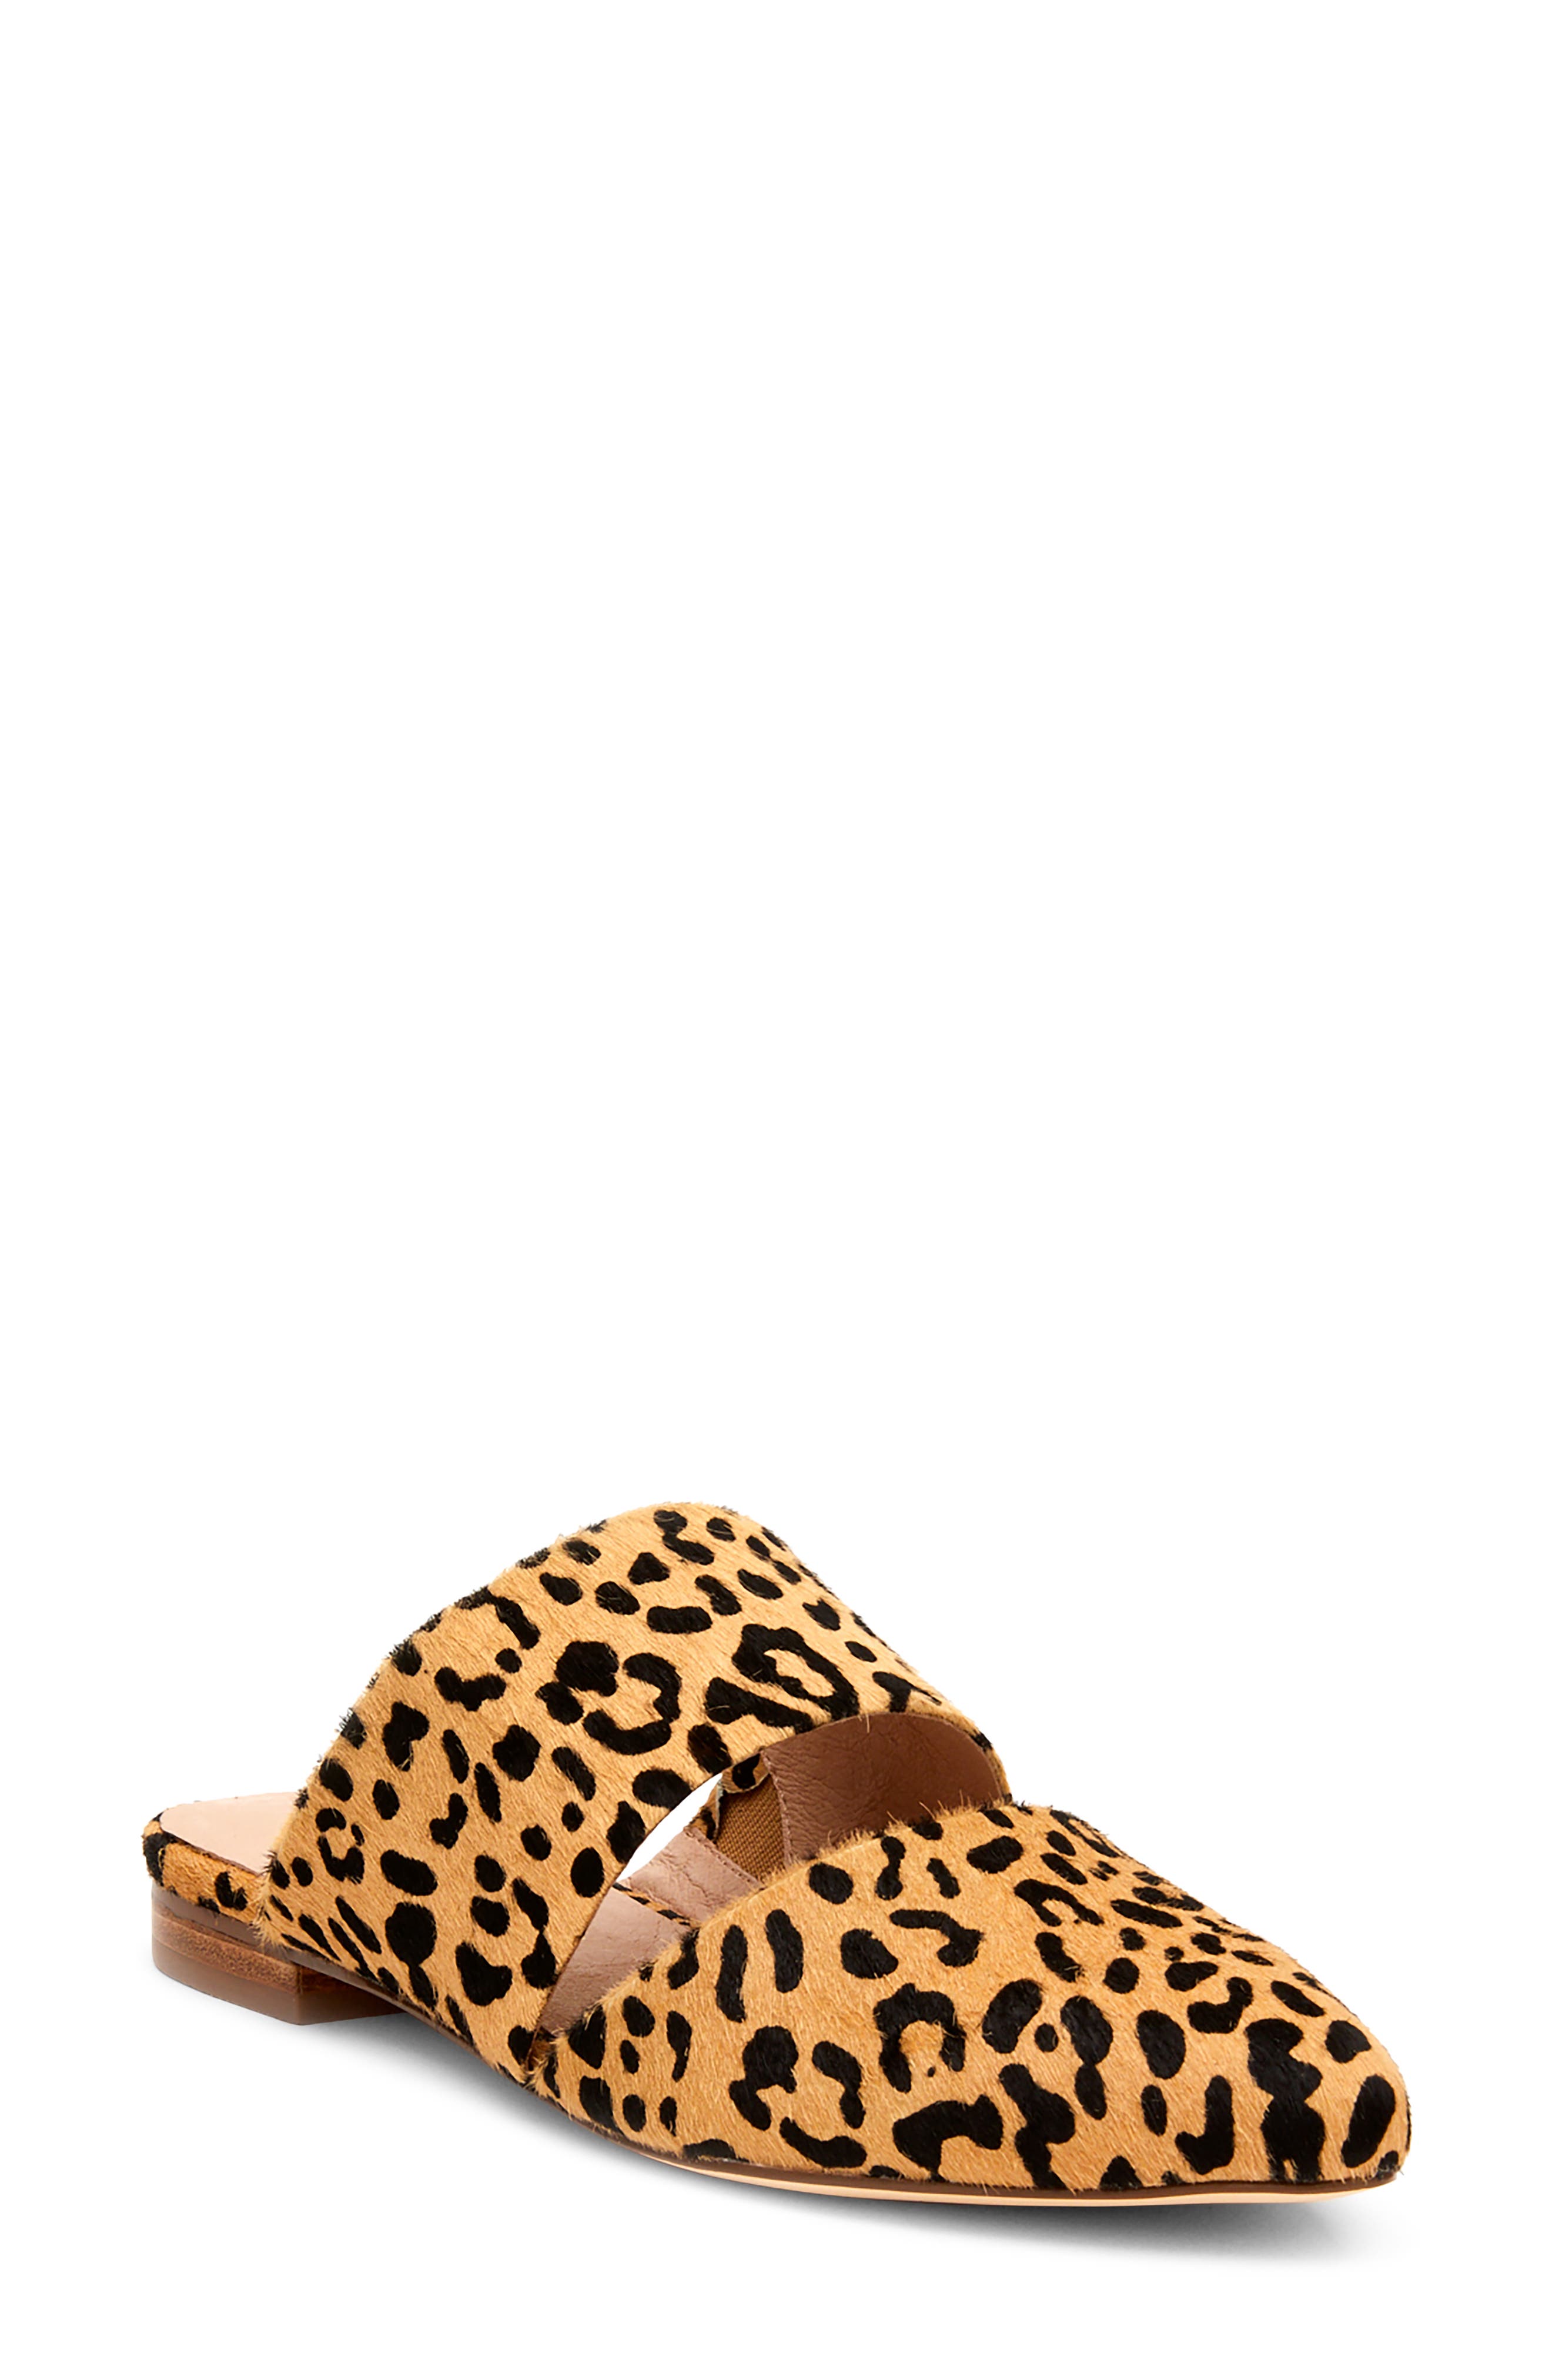 matisse berlin mule leopard